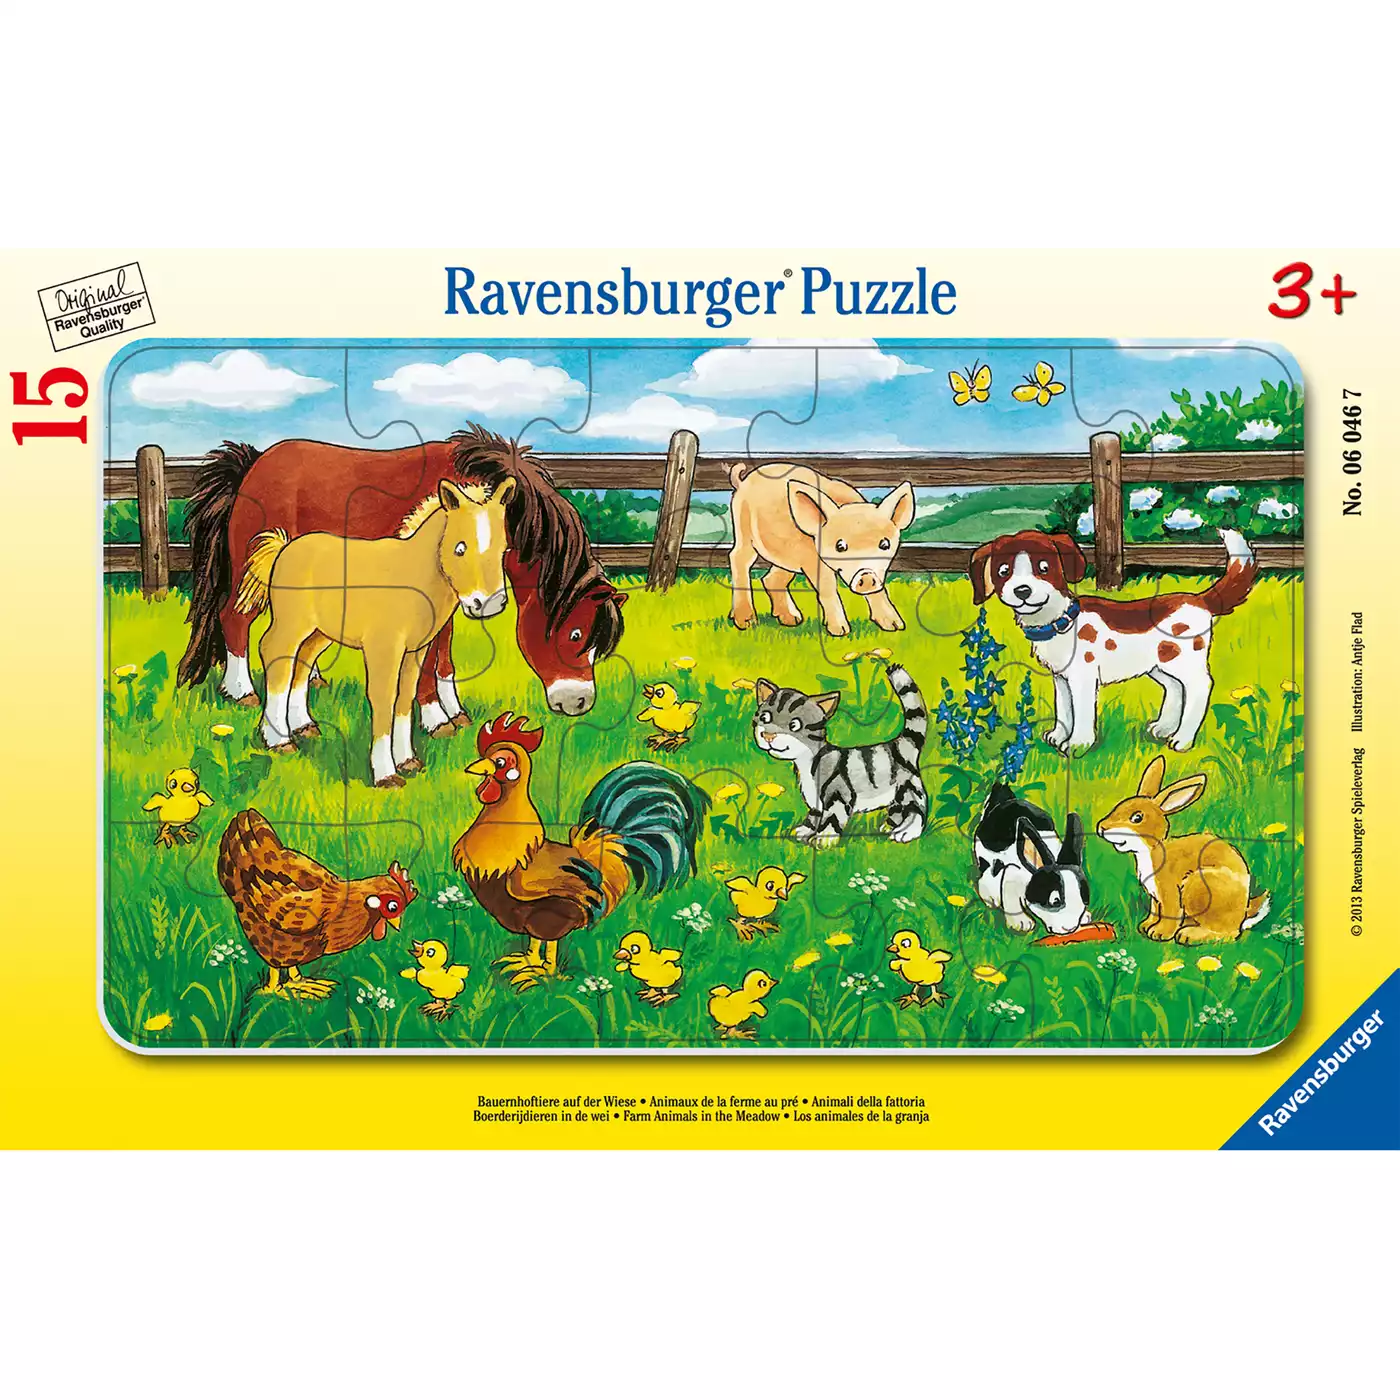 Kinderpuzzle Bauernhoftiere auf der Wiese Ravensburger 2000559250701 3